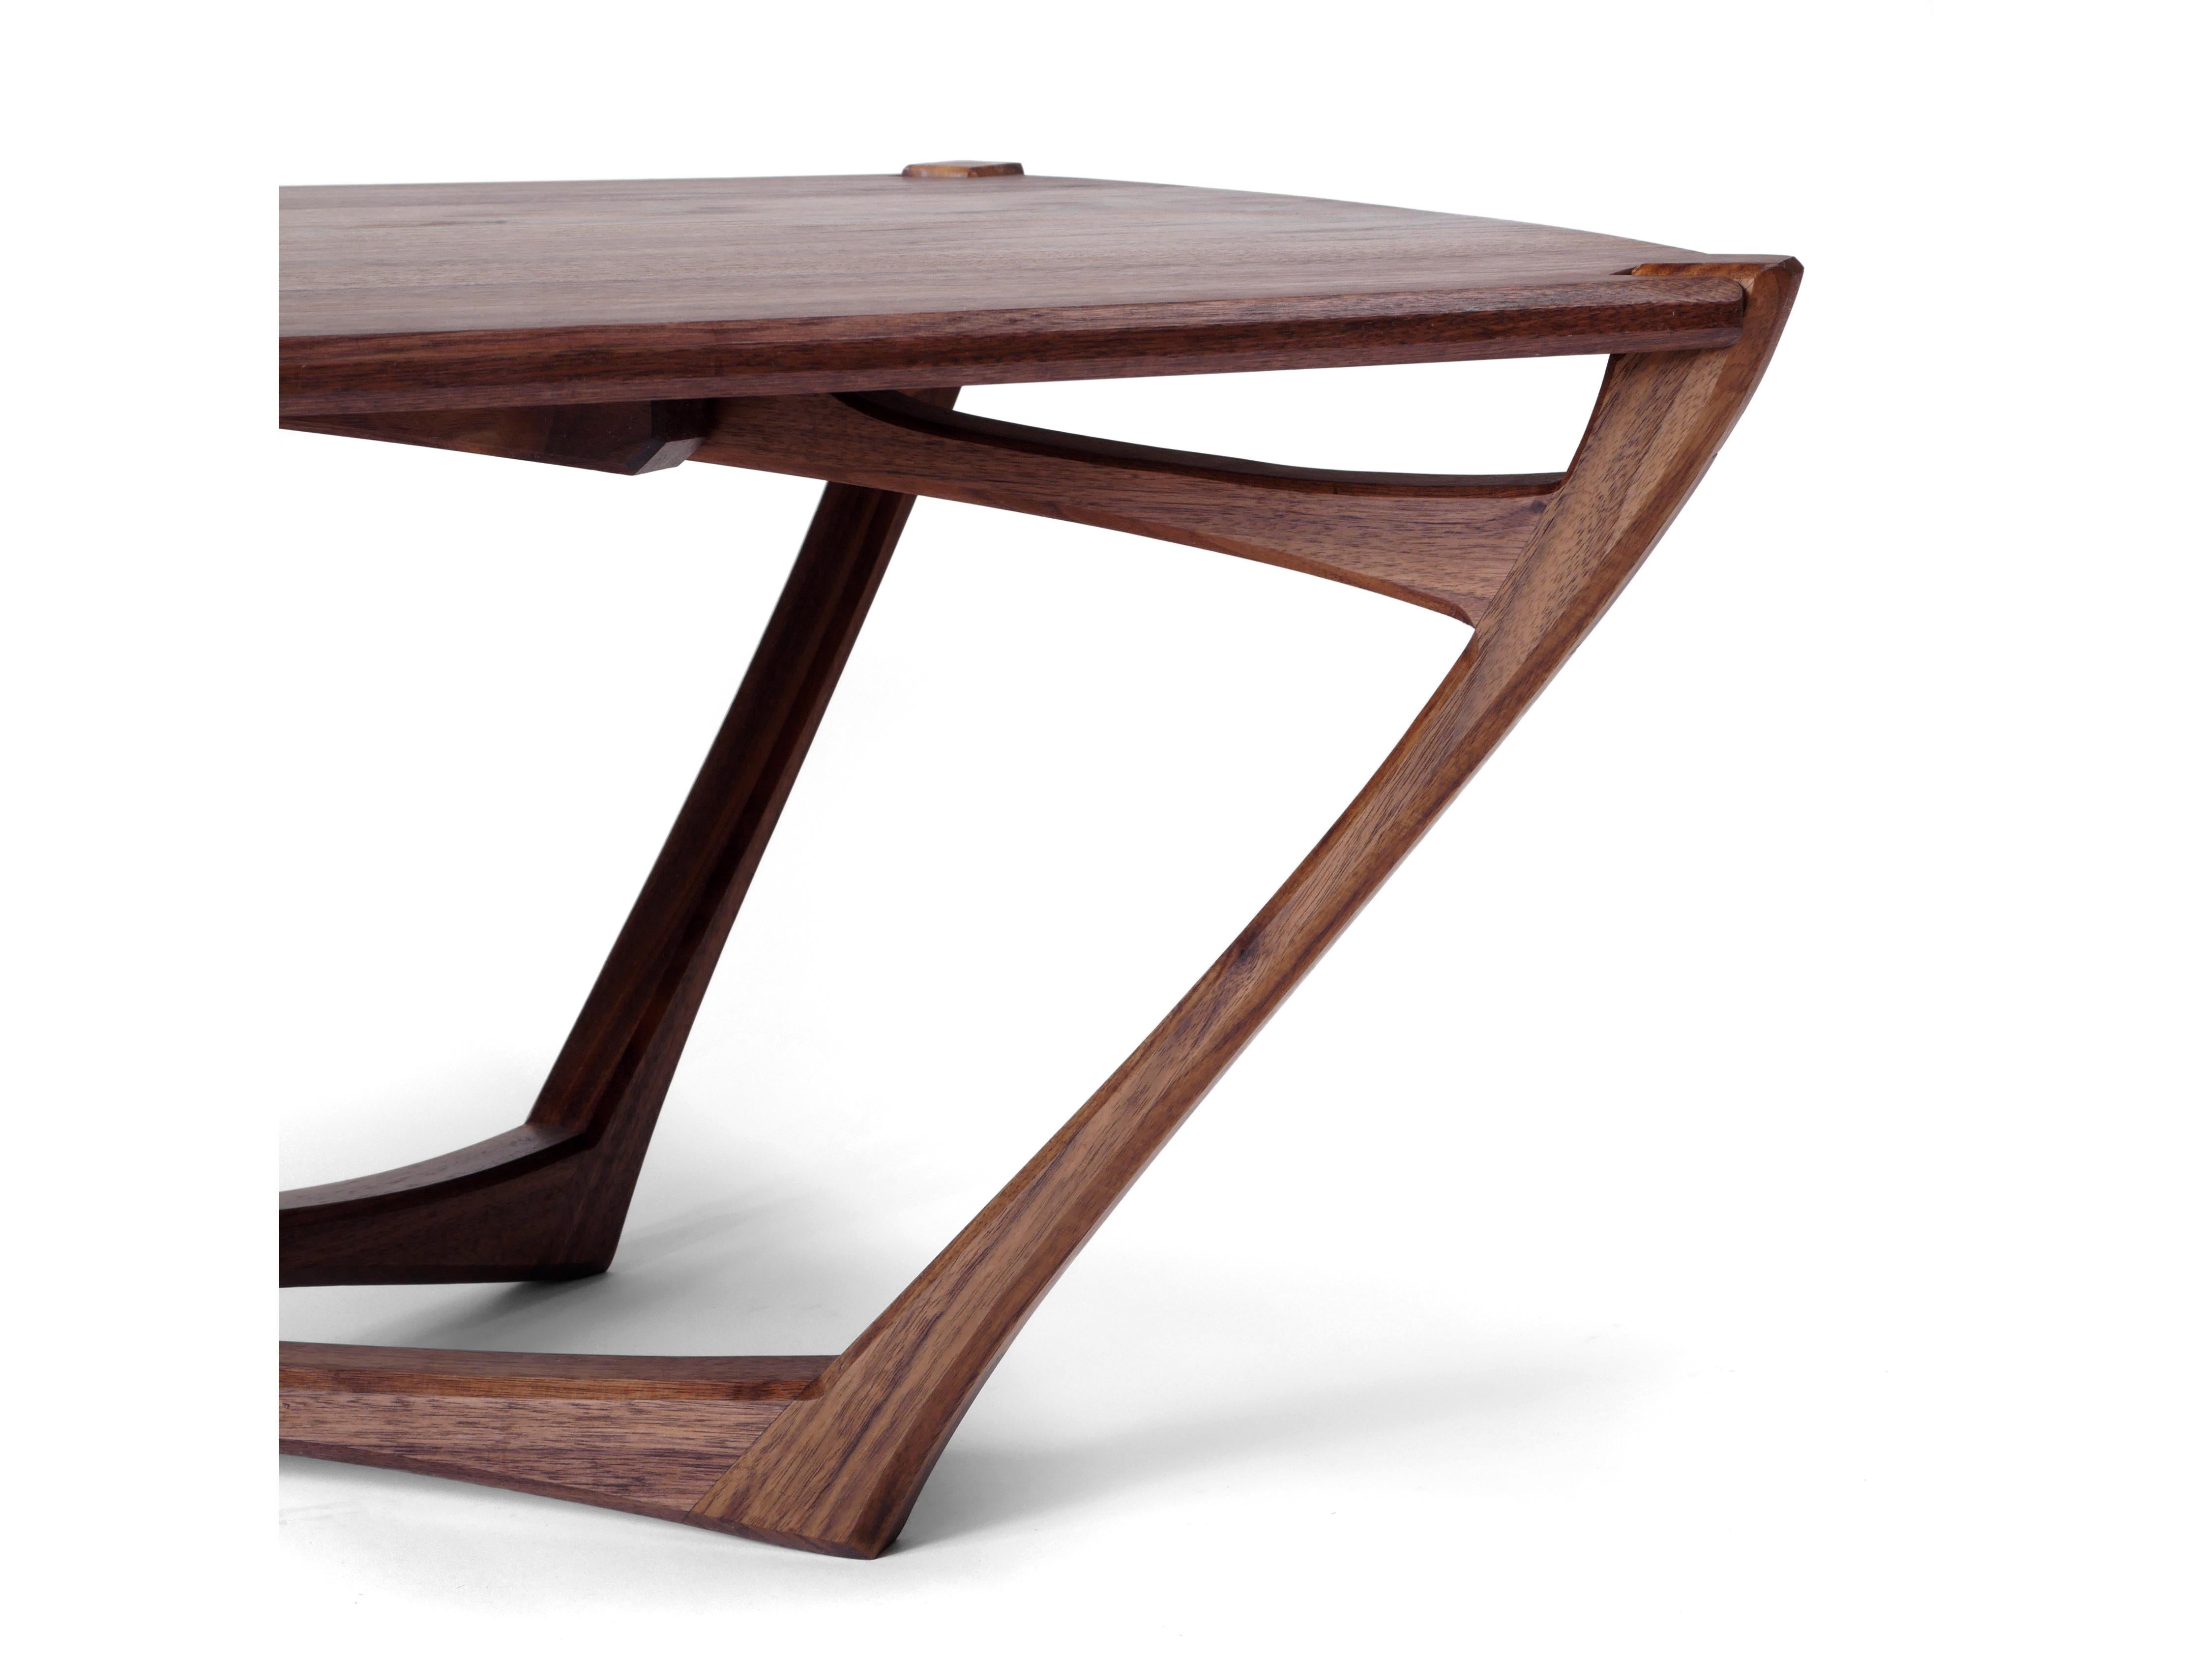 La table basse Mistral est ludique et pleine de vie avec une forme fluide et une construction riche en détails. Il est fabriqué en bois dur massif de noyer noir et construit avec des menuiseries apparentes qui ont été soigneusement conçues pour la